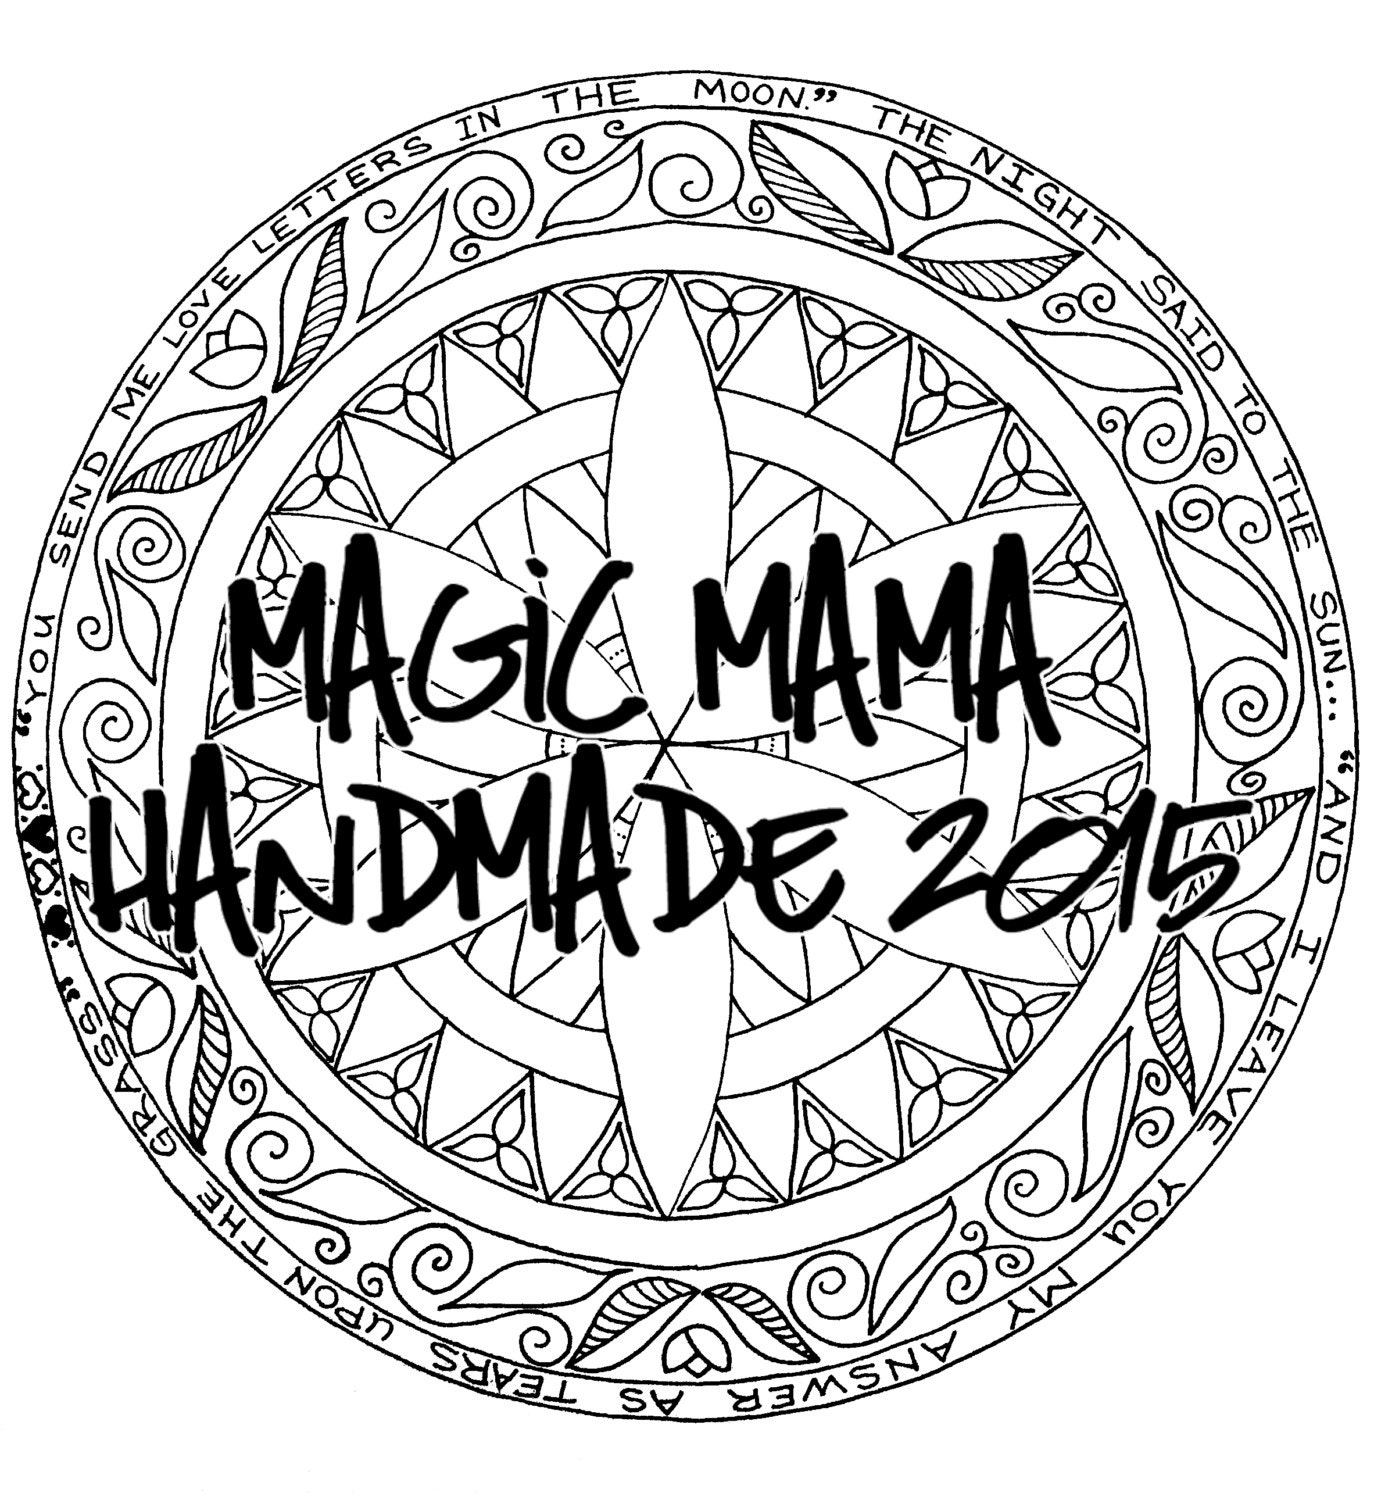 Summer Mandala Coloring Page by MagicMamaHandmade on Etsy